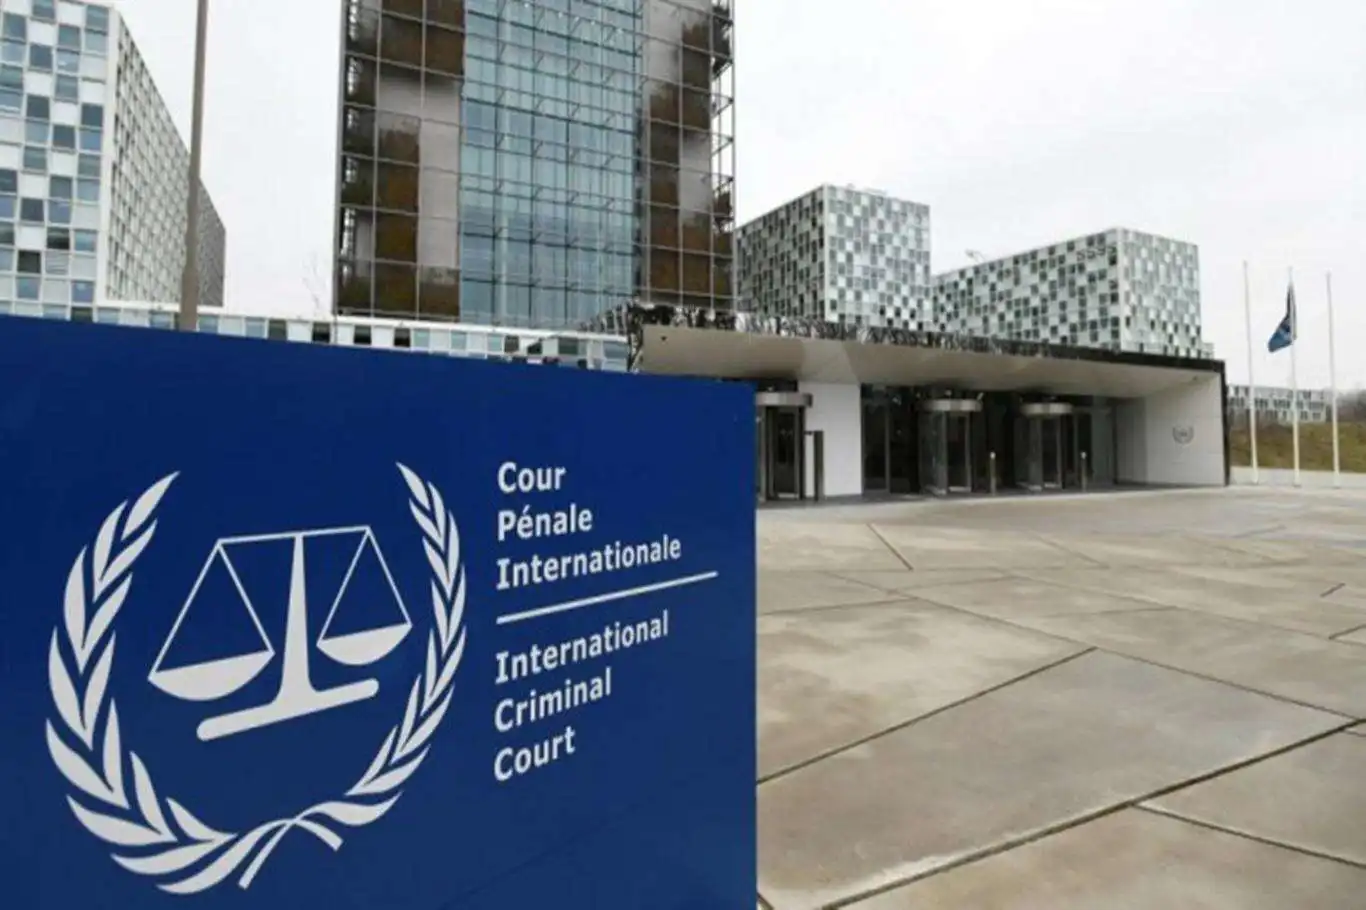 UCM Başsavcısı: Mahkemeye yönelik tehditler derhal durdurulmalı